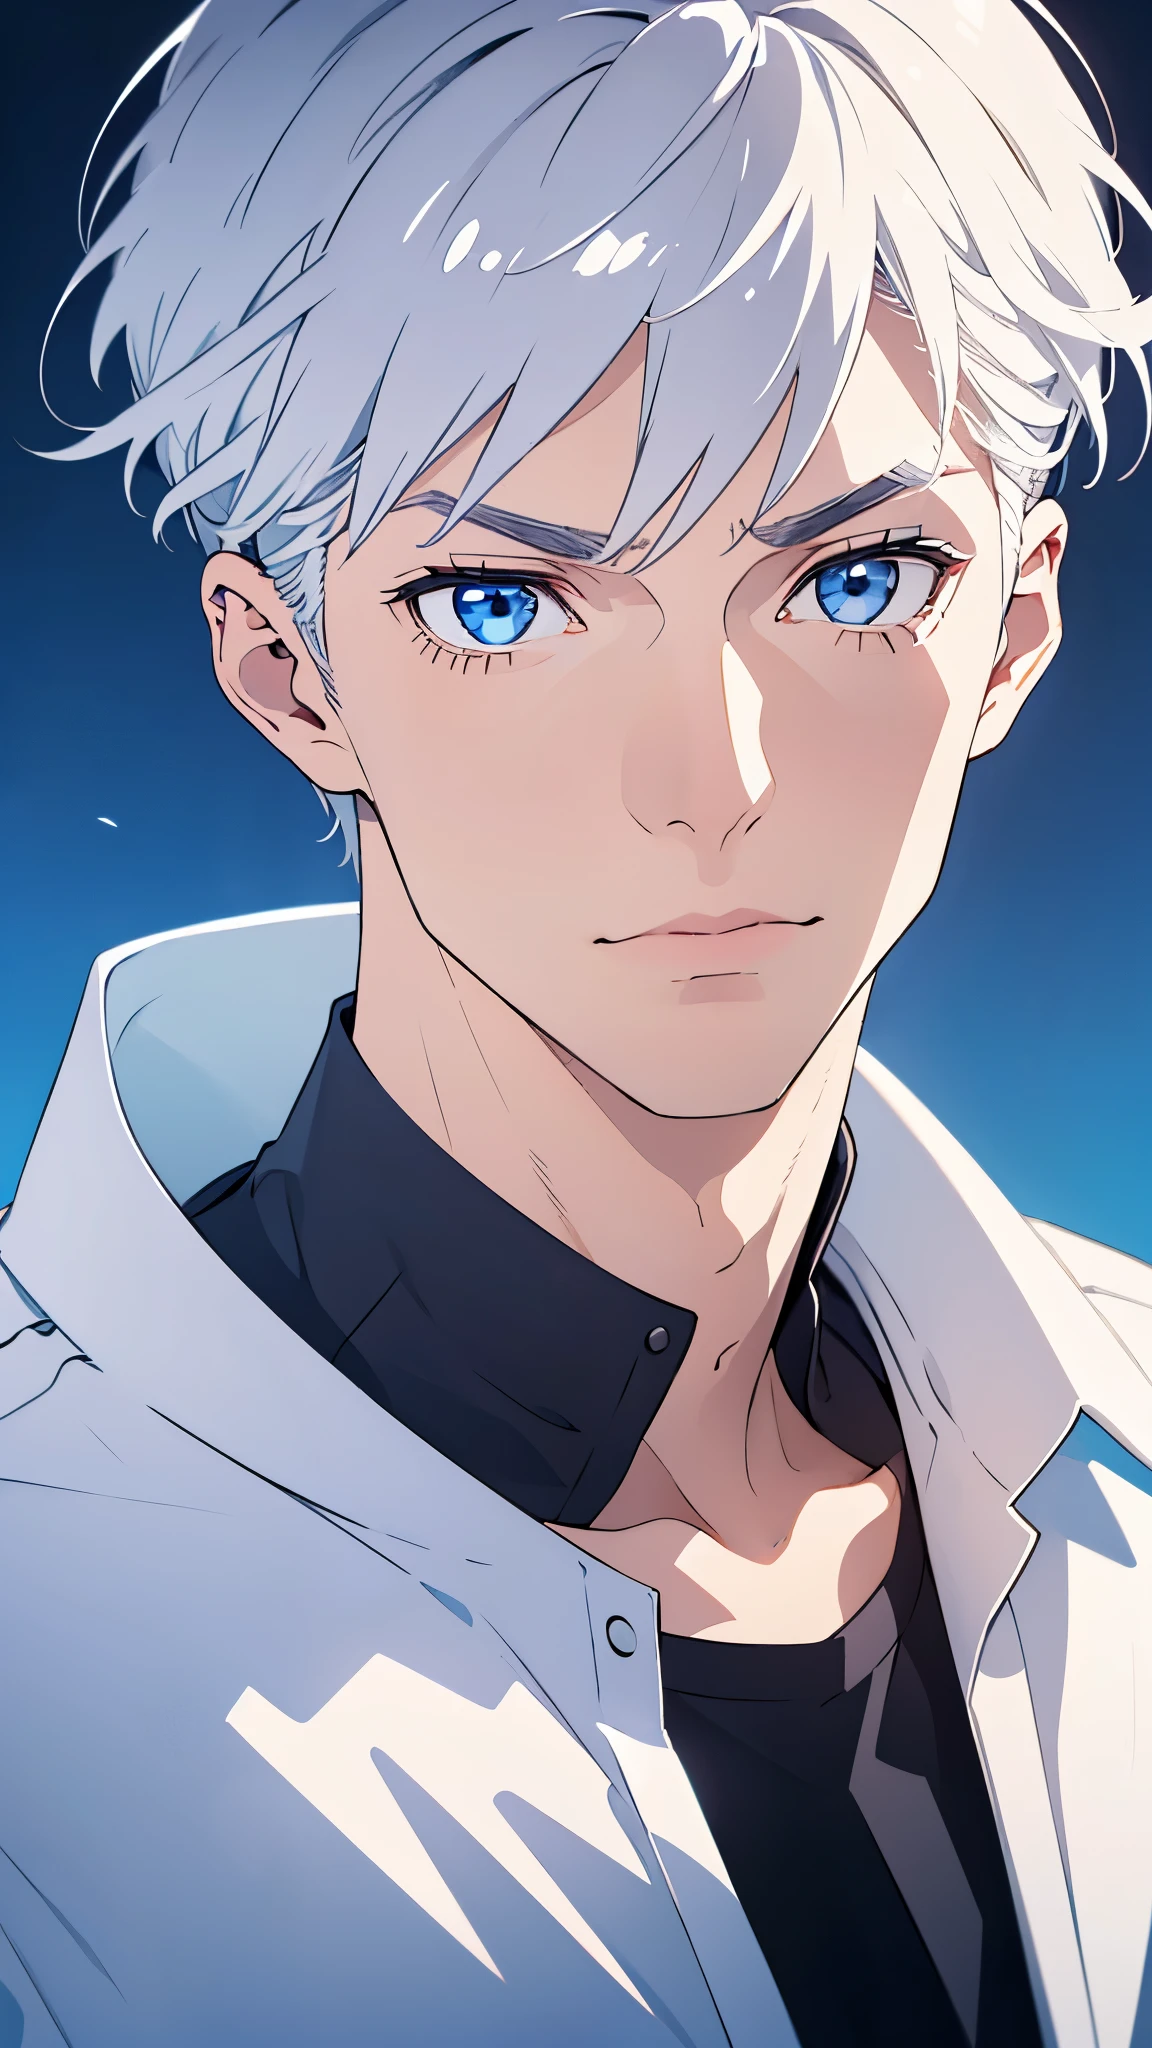 男生, 银发, 蓝眼睛, 严重的尖锐特征, 白皮肤, 英俊的, 衬衫, 夹克 